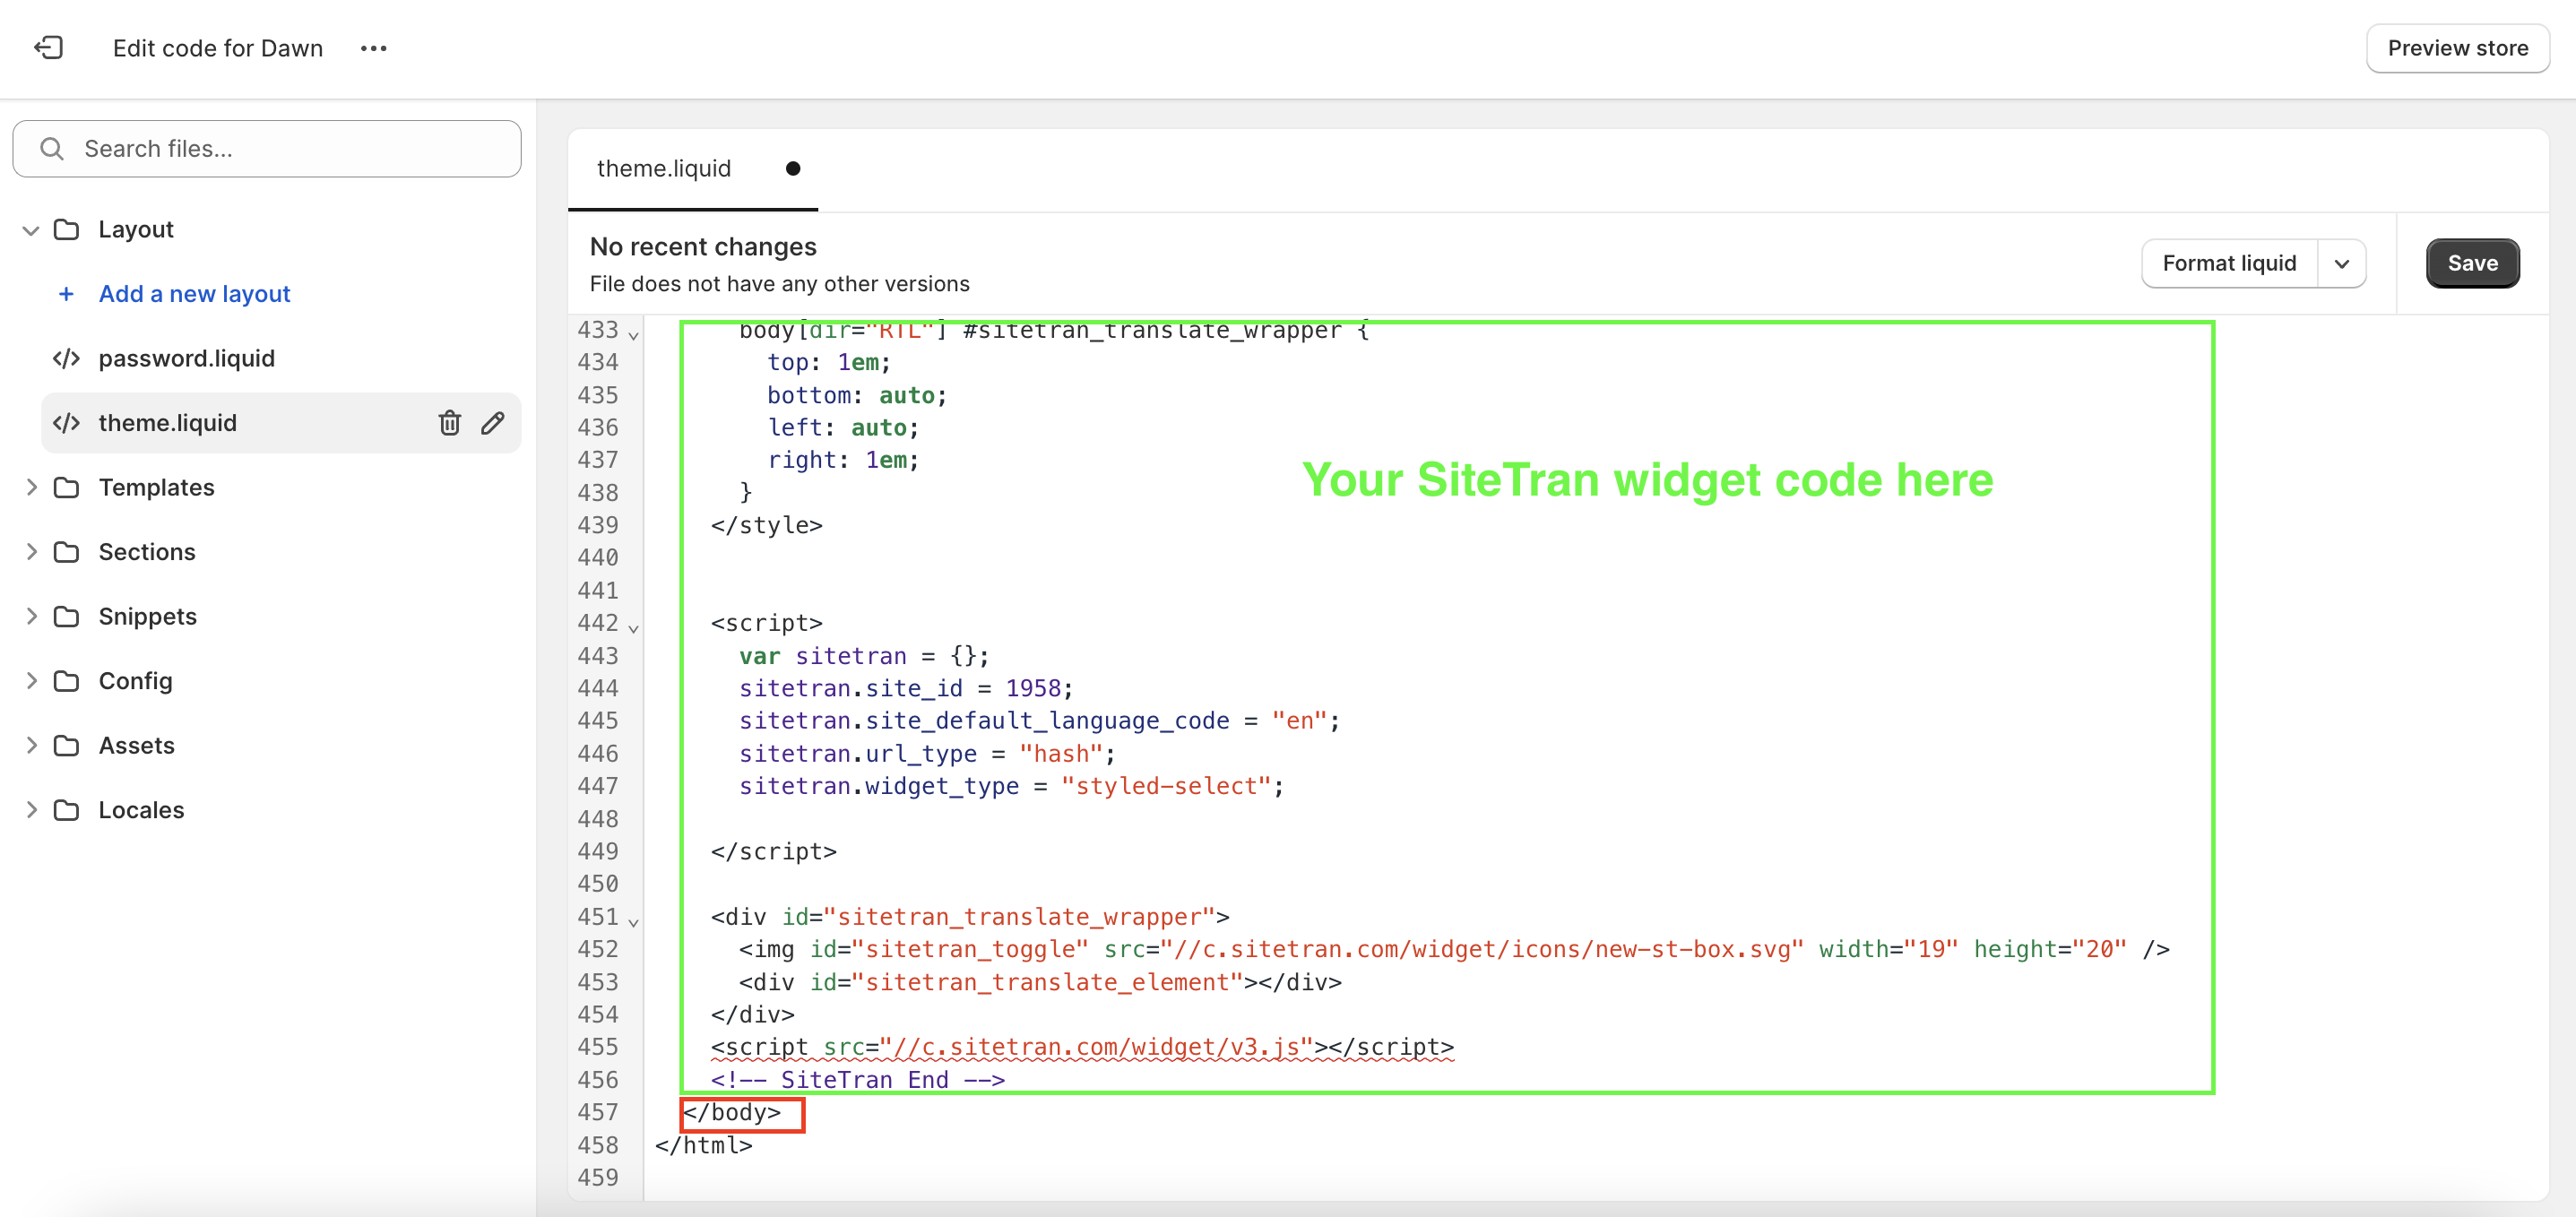 Paste your SiteTran widget code